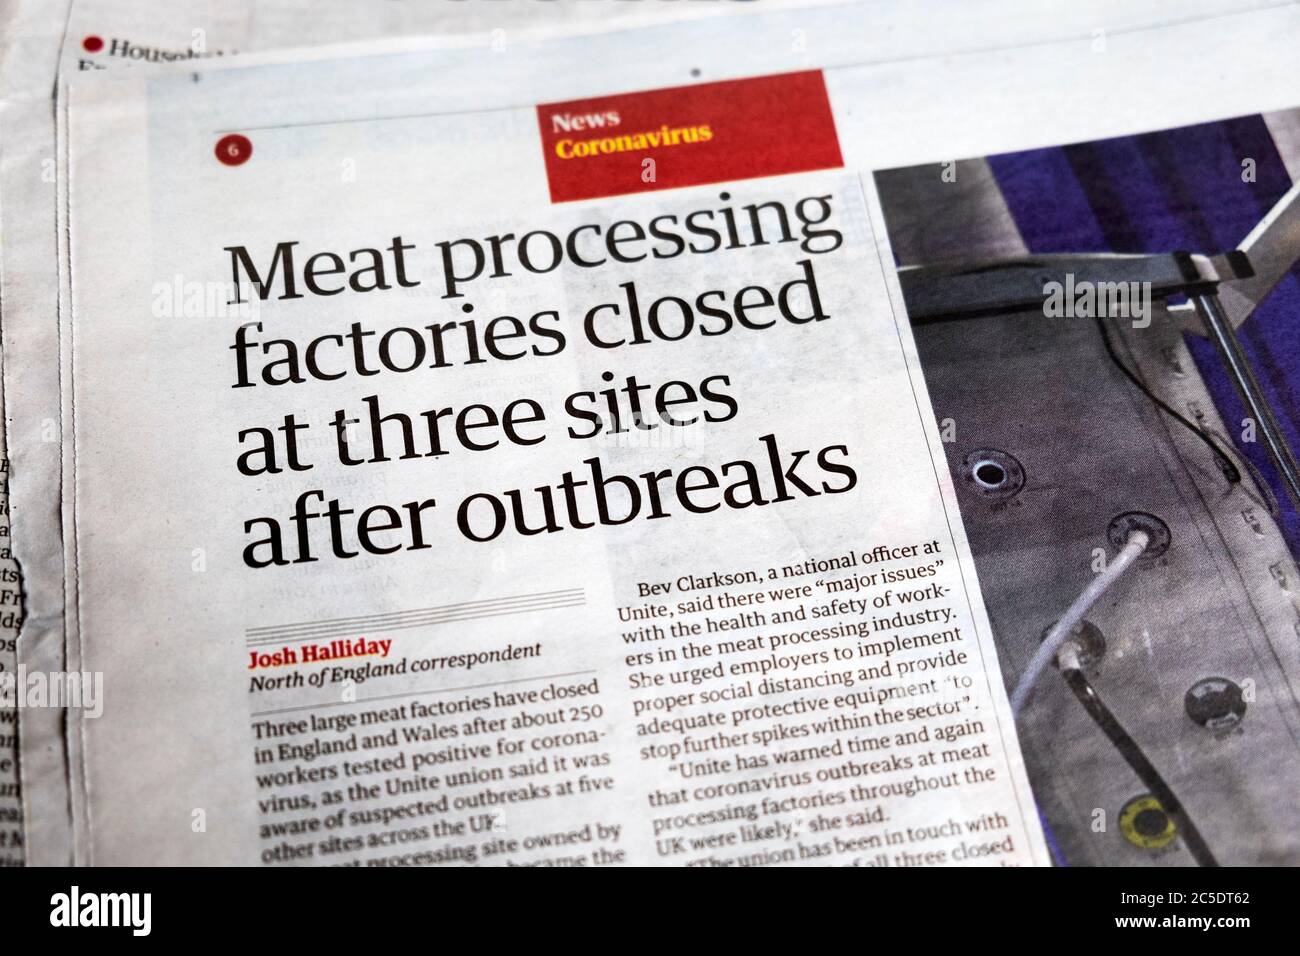 « fermeture des usines de traitement des aliments sur trois sites après les épidémies », titre du journal The Guardian, article 20 juin 2020 Banque D'Images